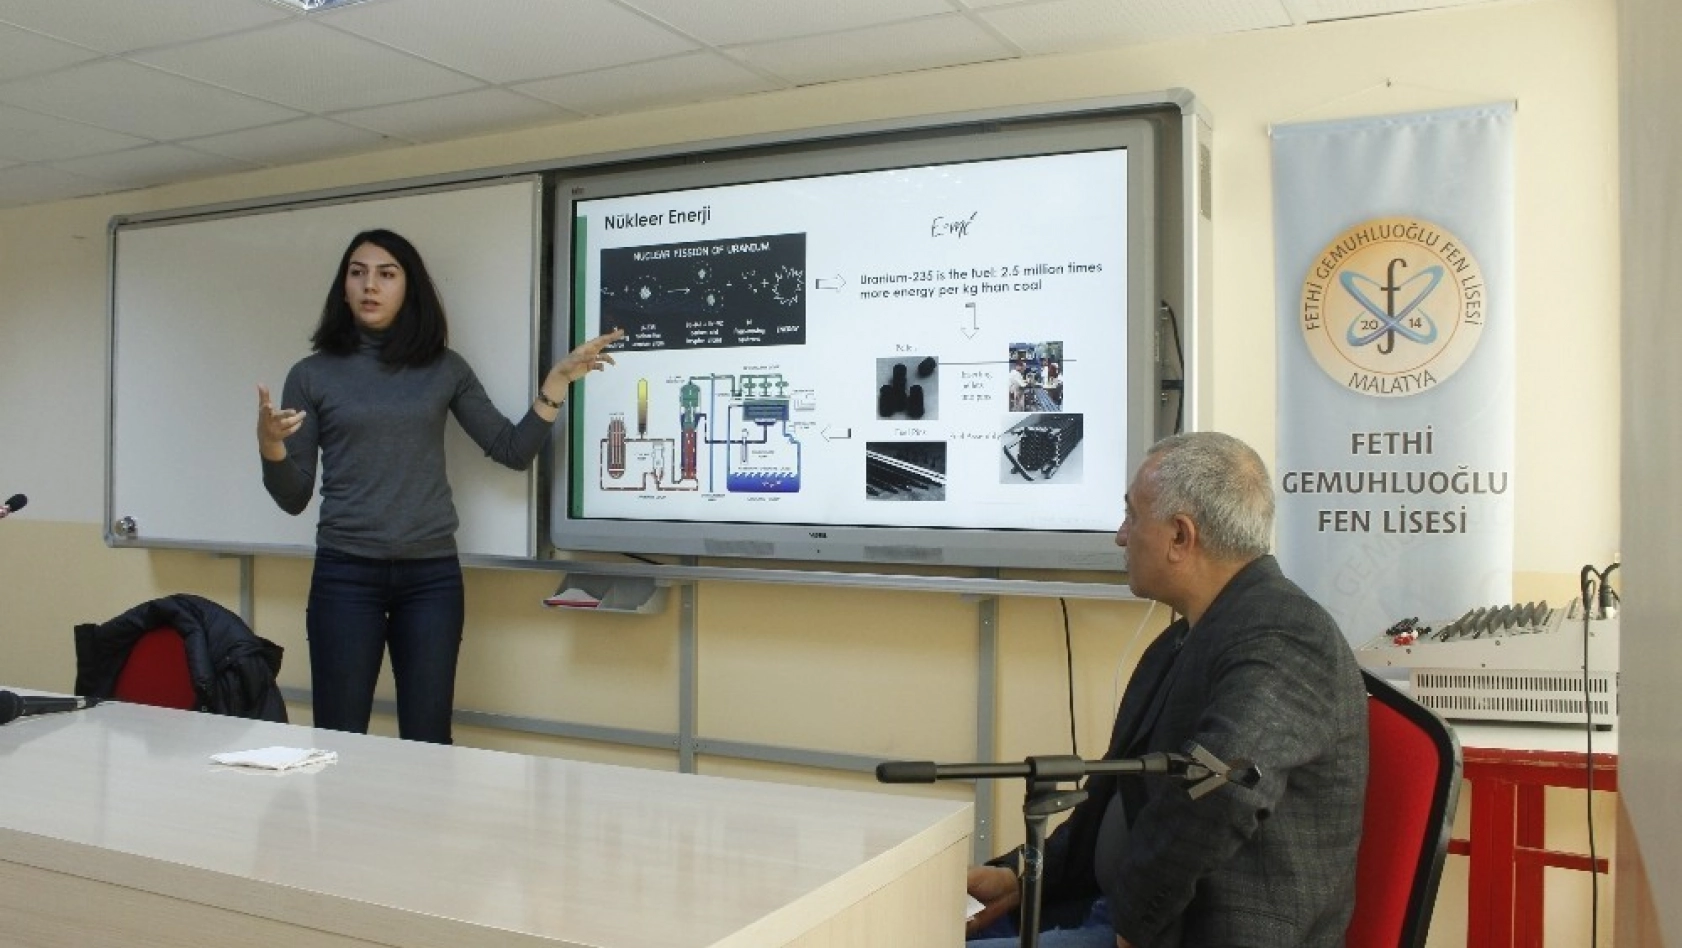 Ünlü nükleer bilimcisi Malatya'da seminer verdi 